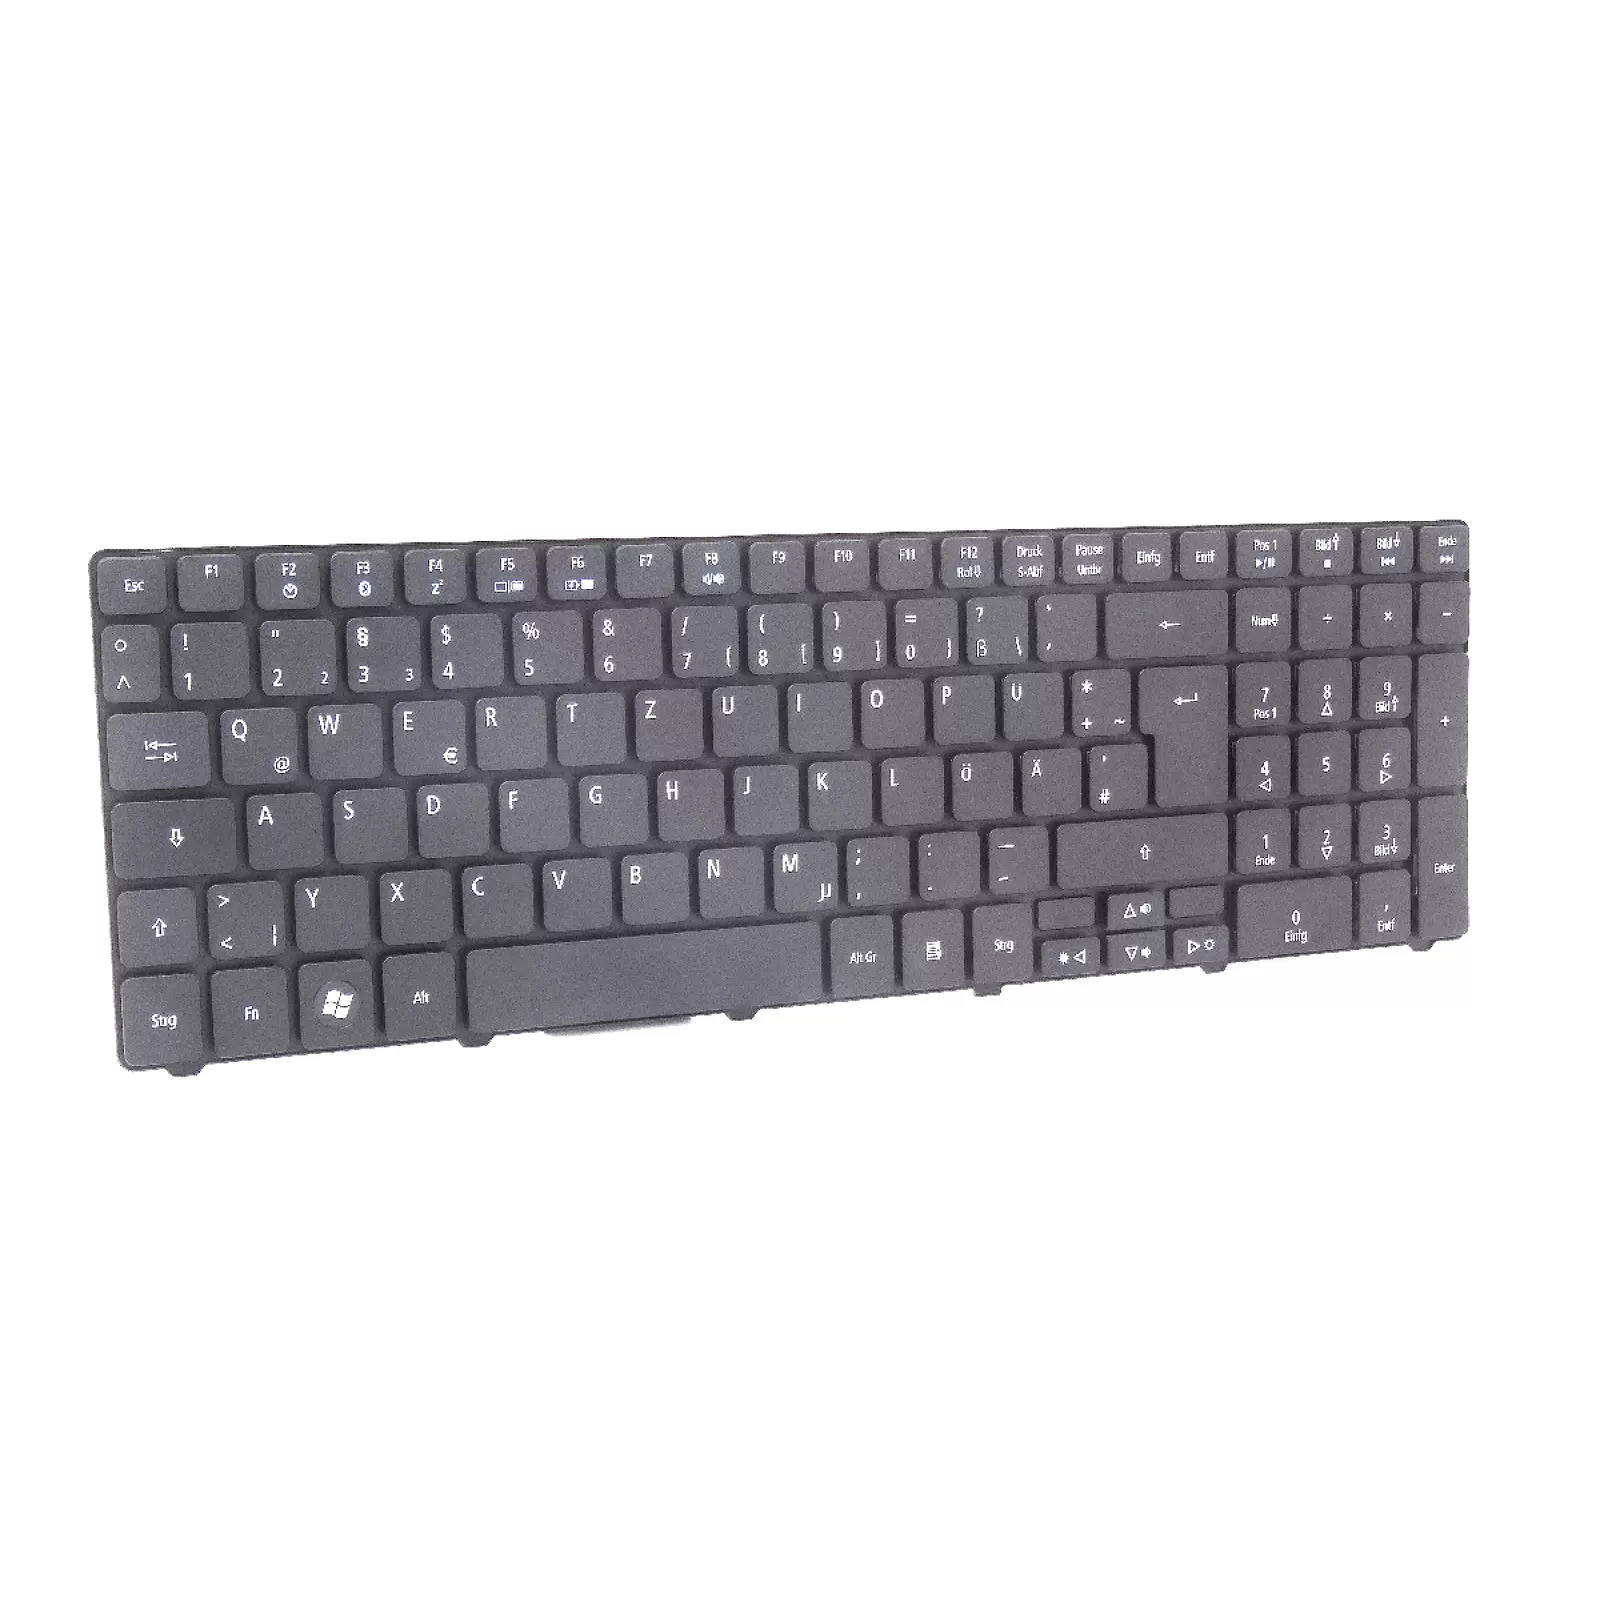 Ersatz-, Austausch- Tastatur für Notebook Acer Aspire 5250 / 5410 / 5733 / 5810